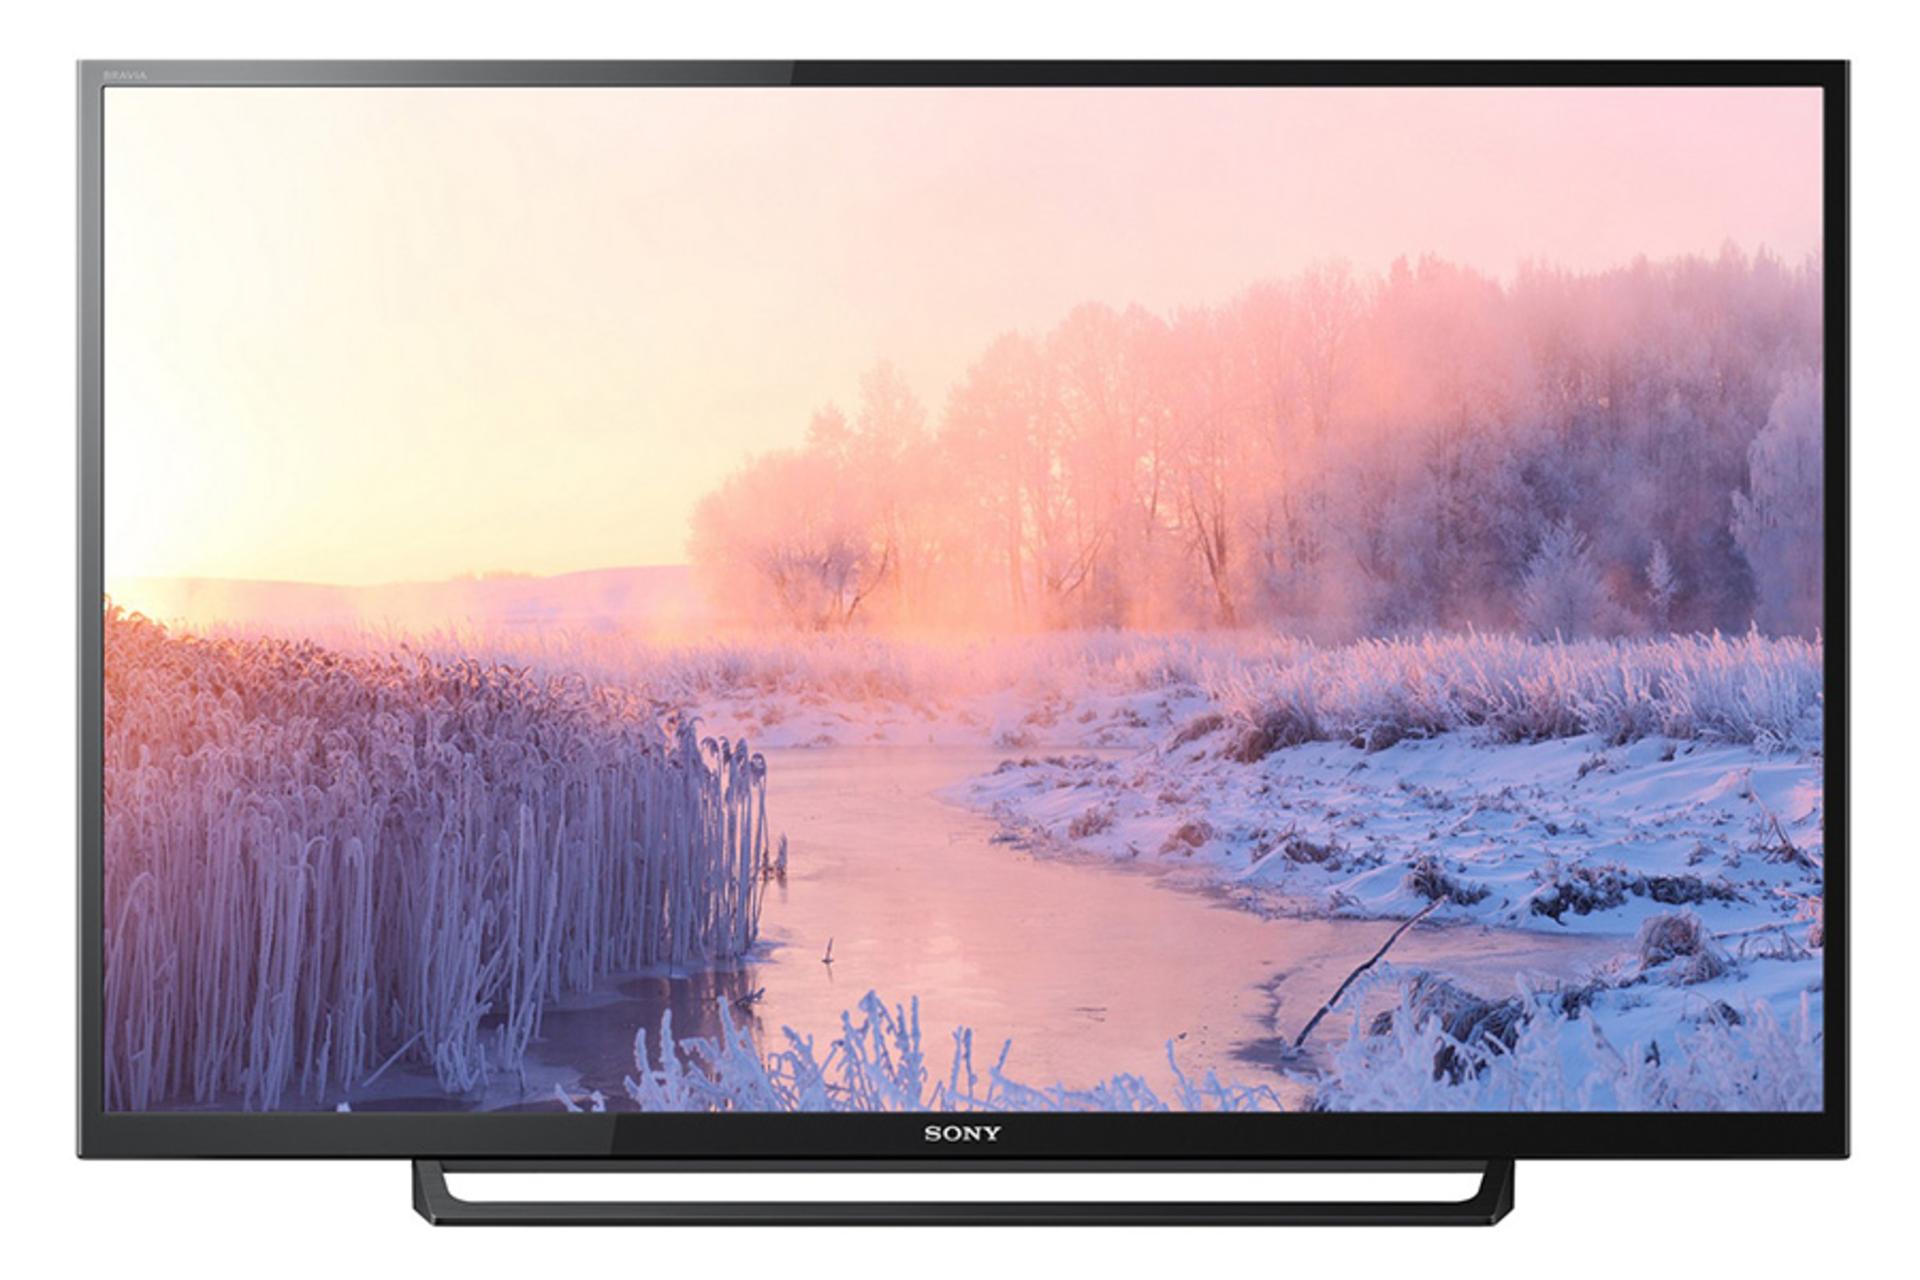 نمای جلو تلویزیون سونی R300E مدل 32 اینچ با صفحه روشن